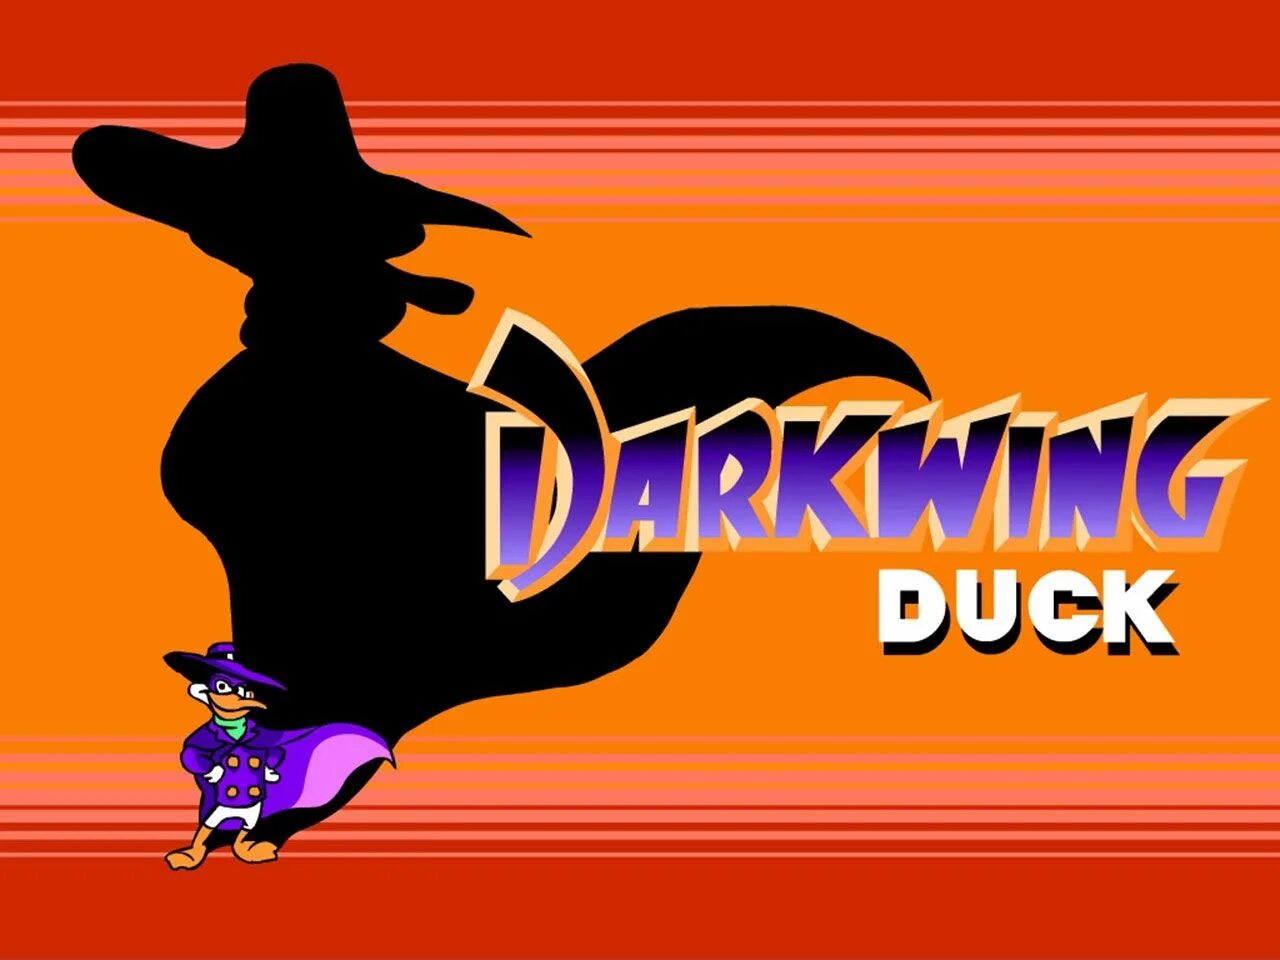 Darkwing duck capcom. Dendy черный плащ. Черный плащ NES. Черный плащ 2 на Денди. Чёрный плащ игра на Денди.